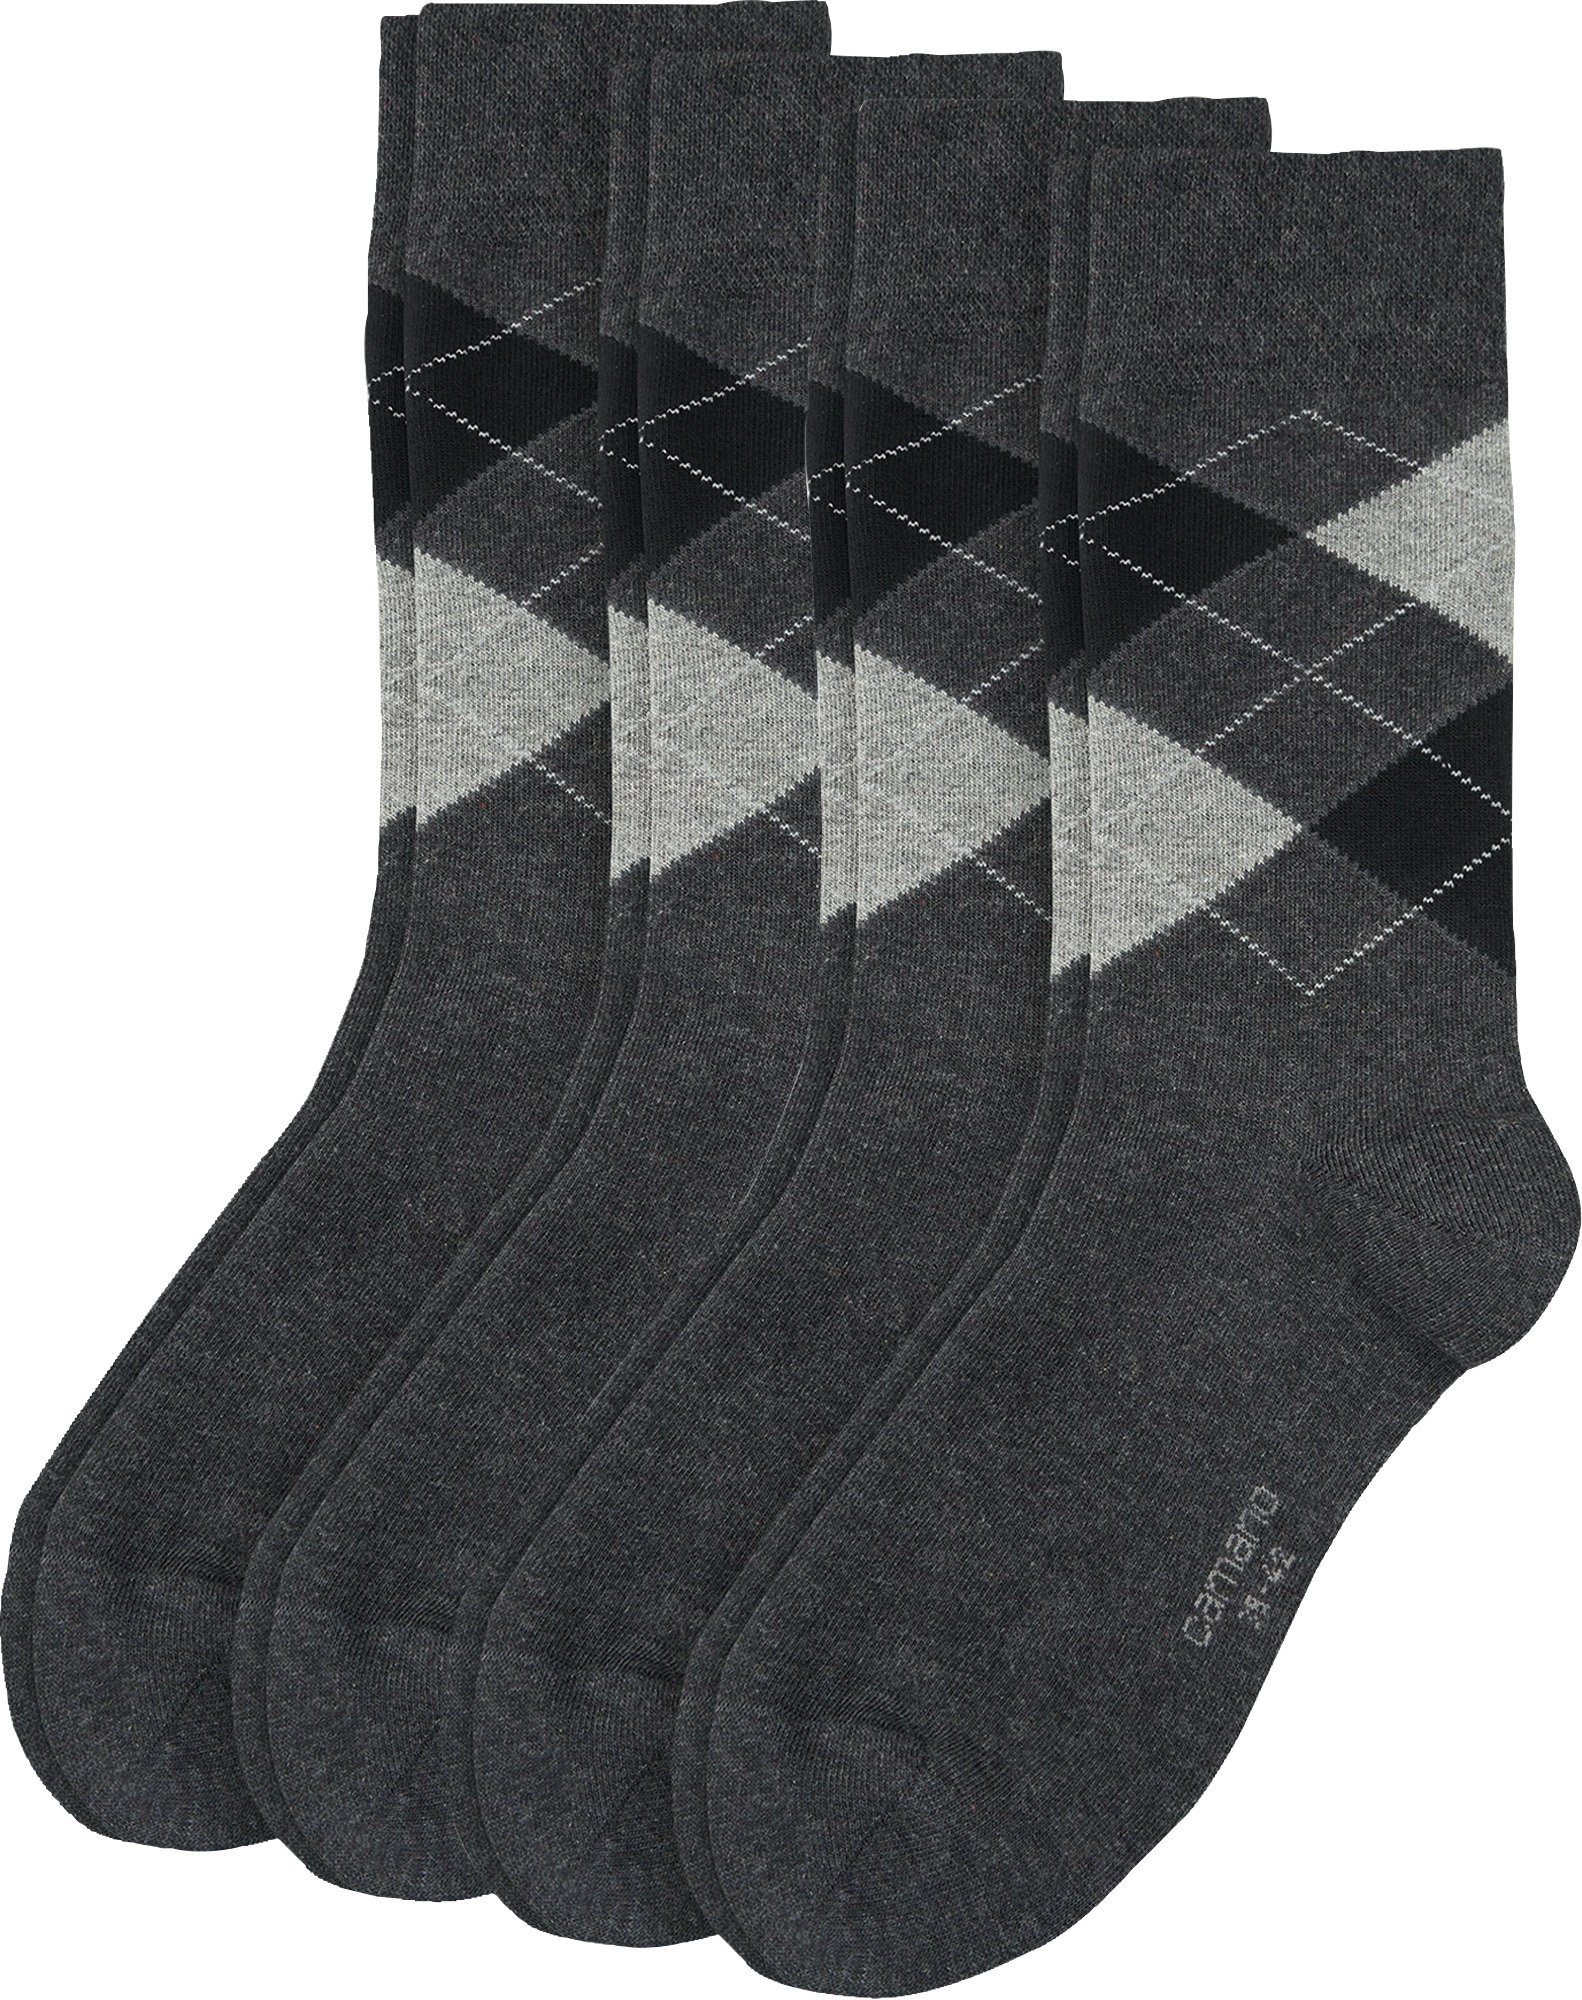 Camano Socken Herren-Socken 4 Paar gemustert anthrazit